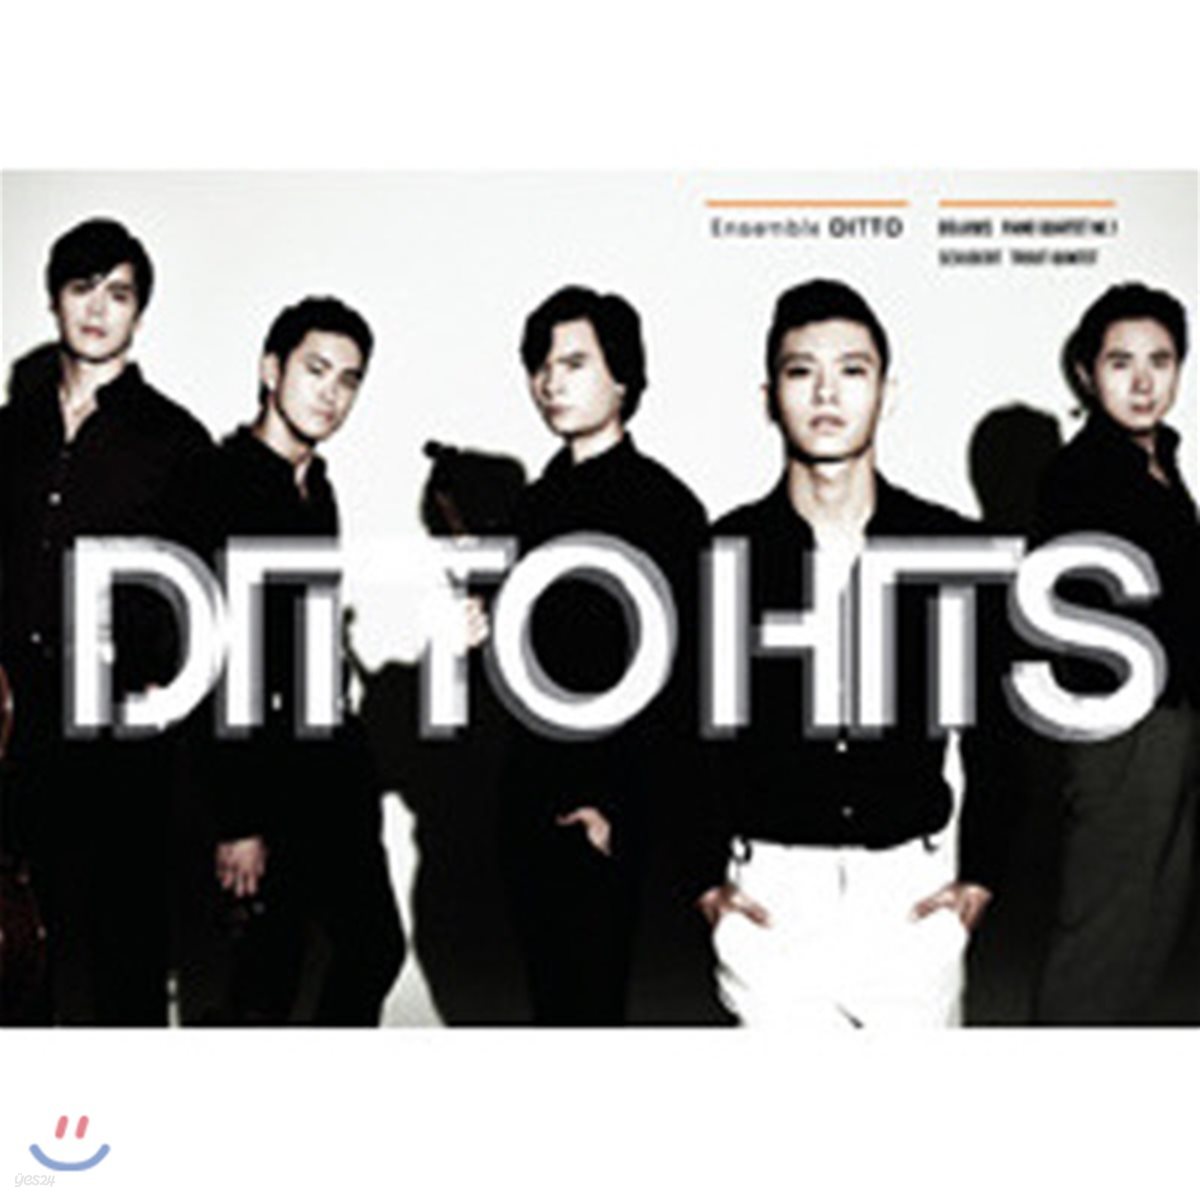 디토 (Ditto) / Ditto Hits (2CD+DVD/미개봉/du8592)